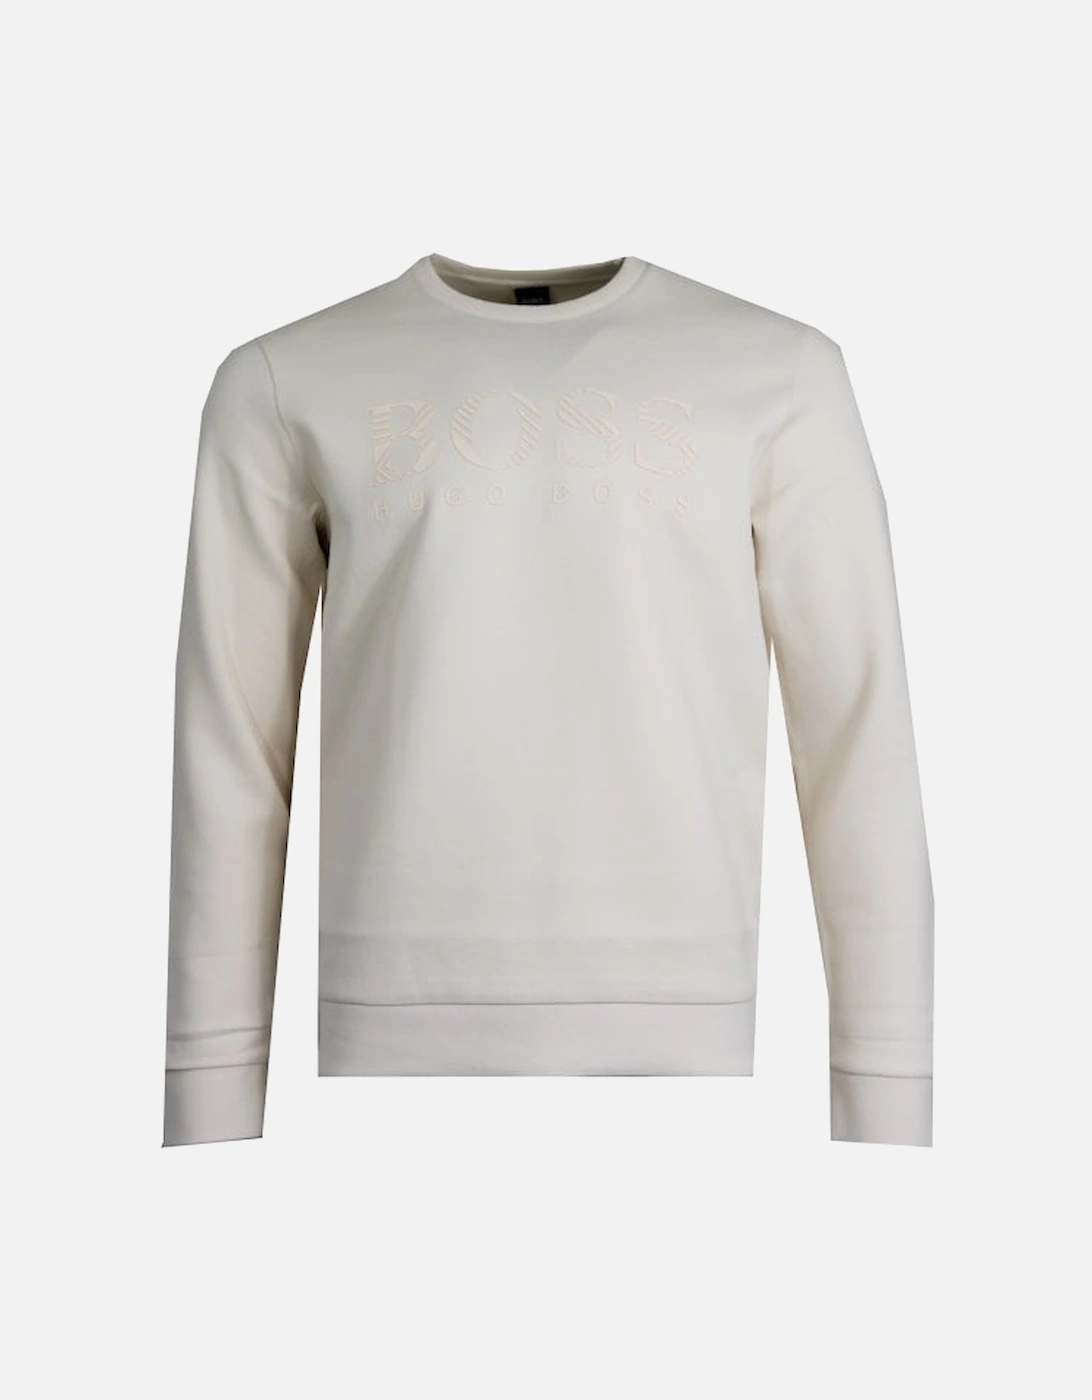 Salbo Iconic Sweatshirt, 2 of 1